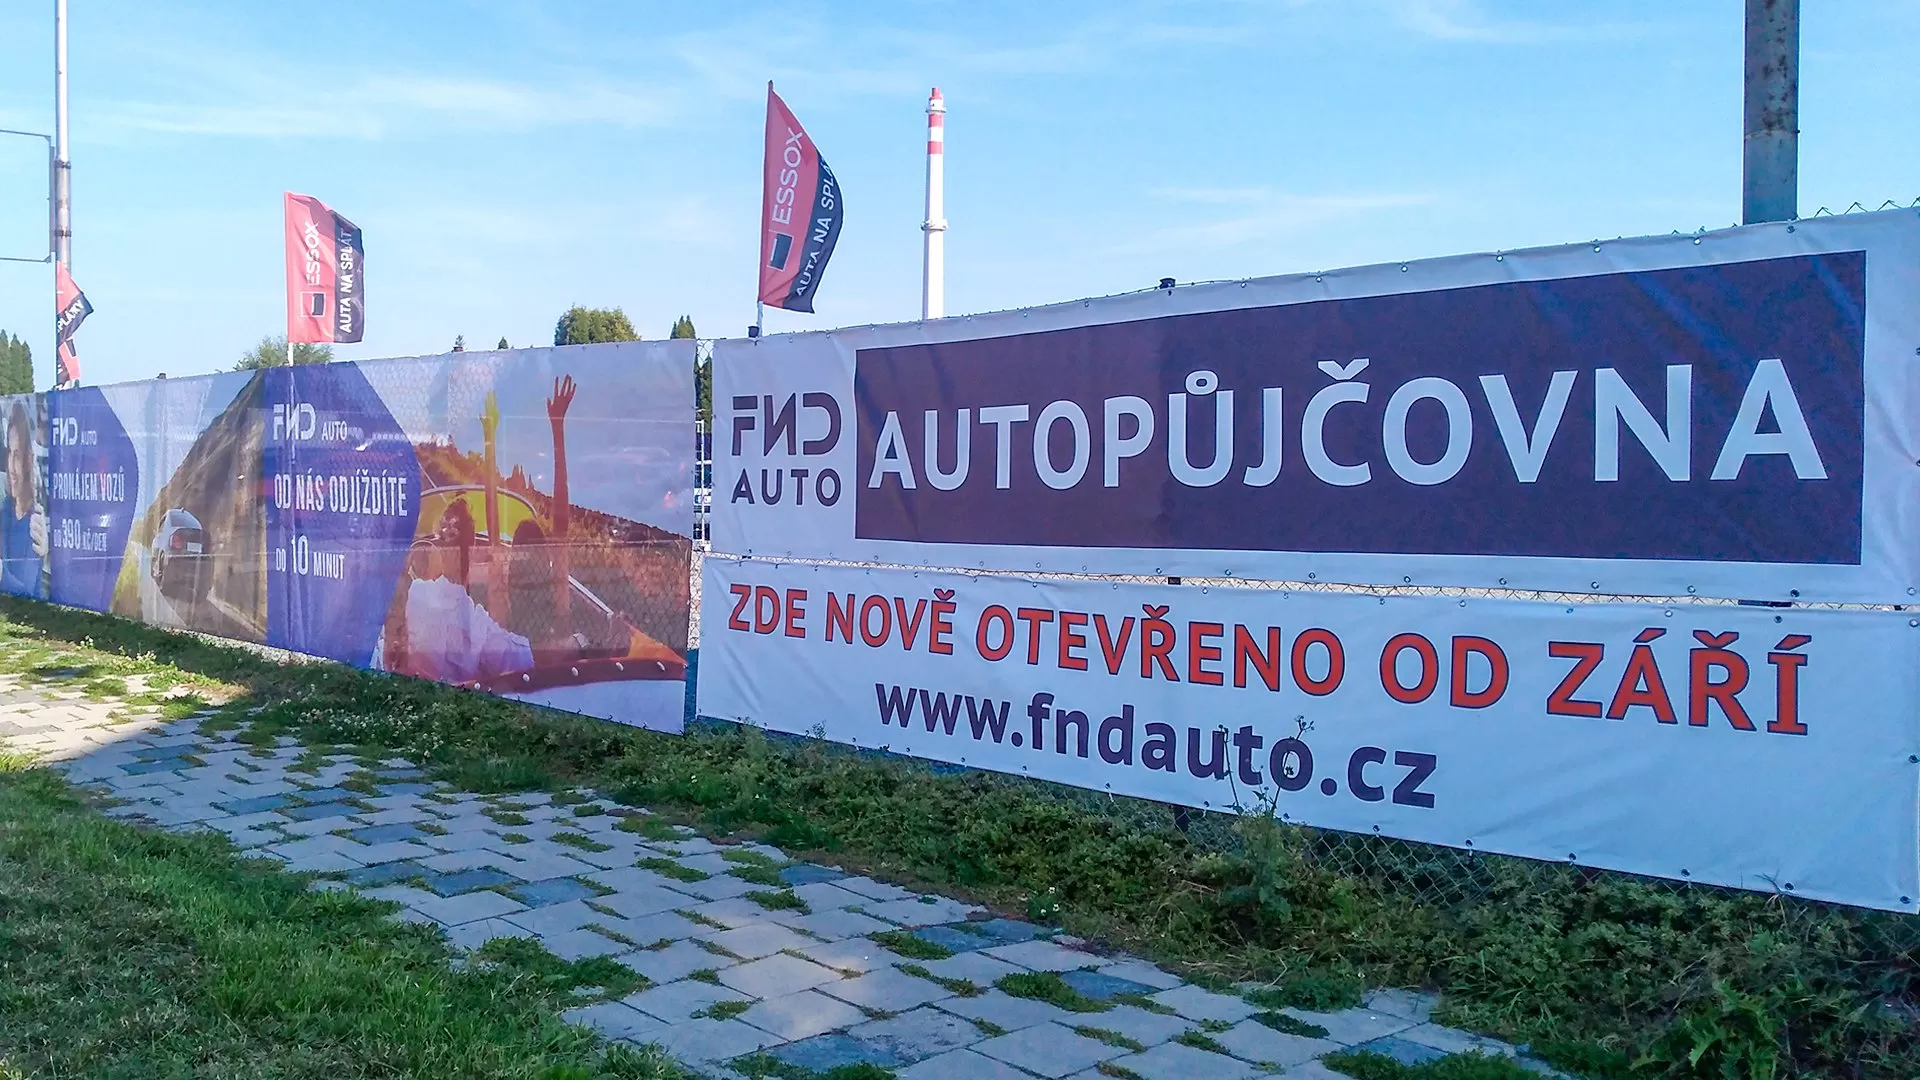 V září otevíráme třetí pobočku autopůjčovny - v Olomouci